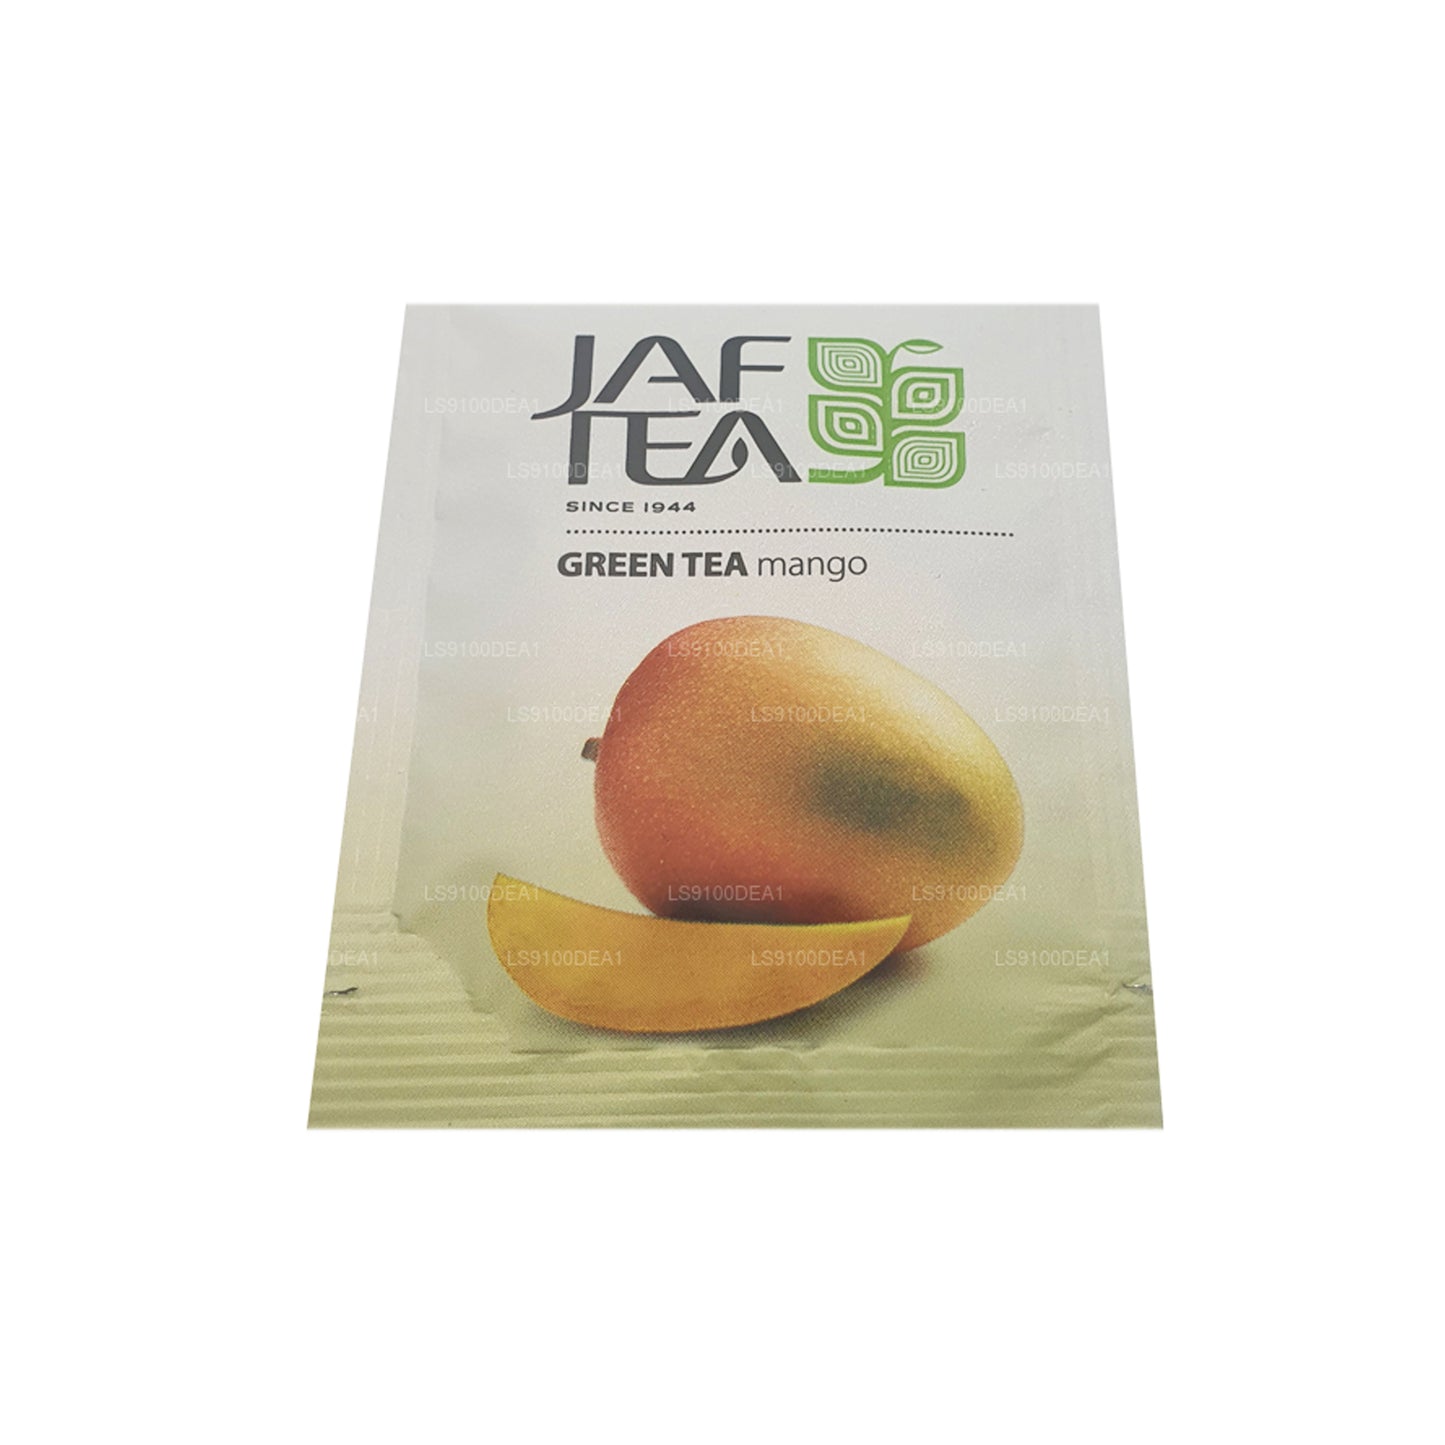 Jaf Tea Pure Green Collection Foil Envelop Tea Bags (160g)